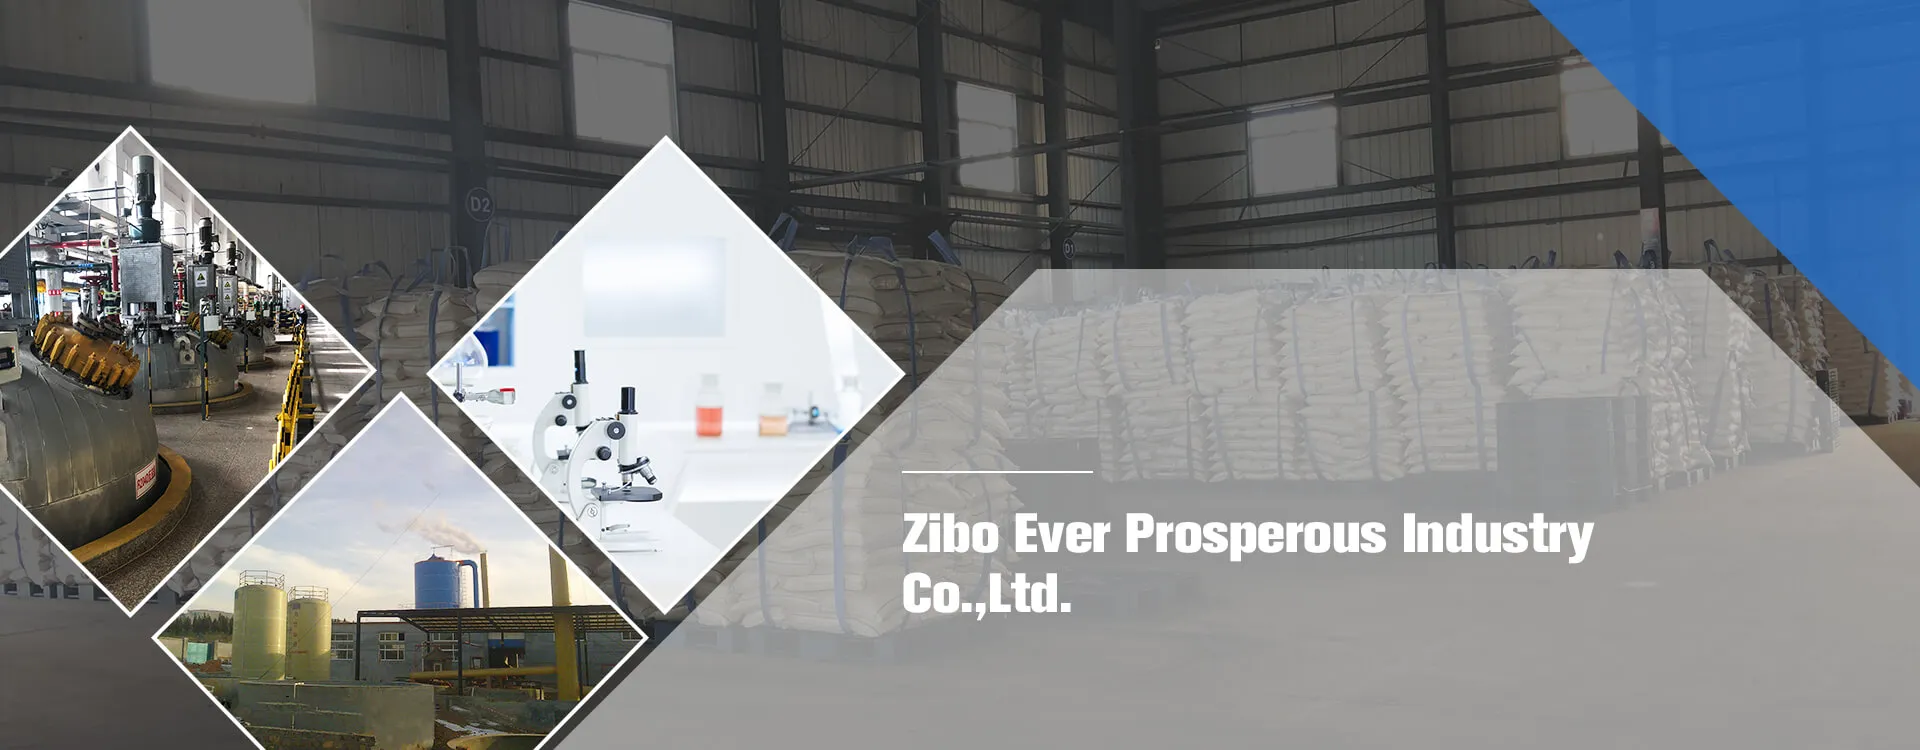 Zibo siempre próspera Industry Co., Ltd.